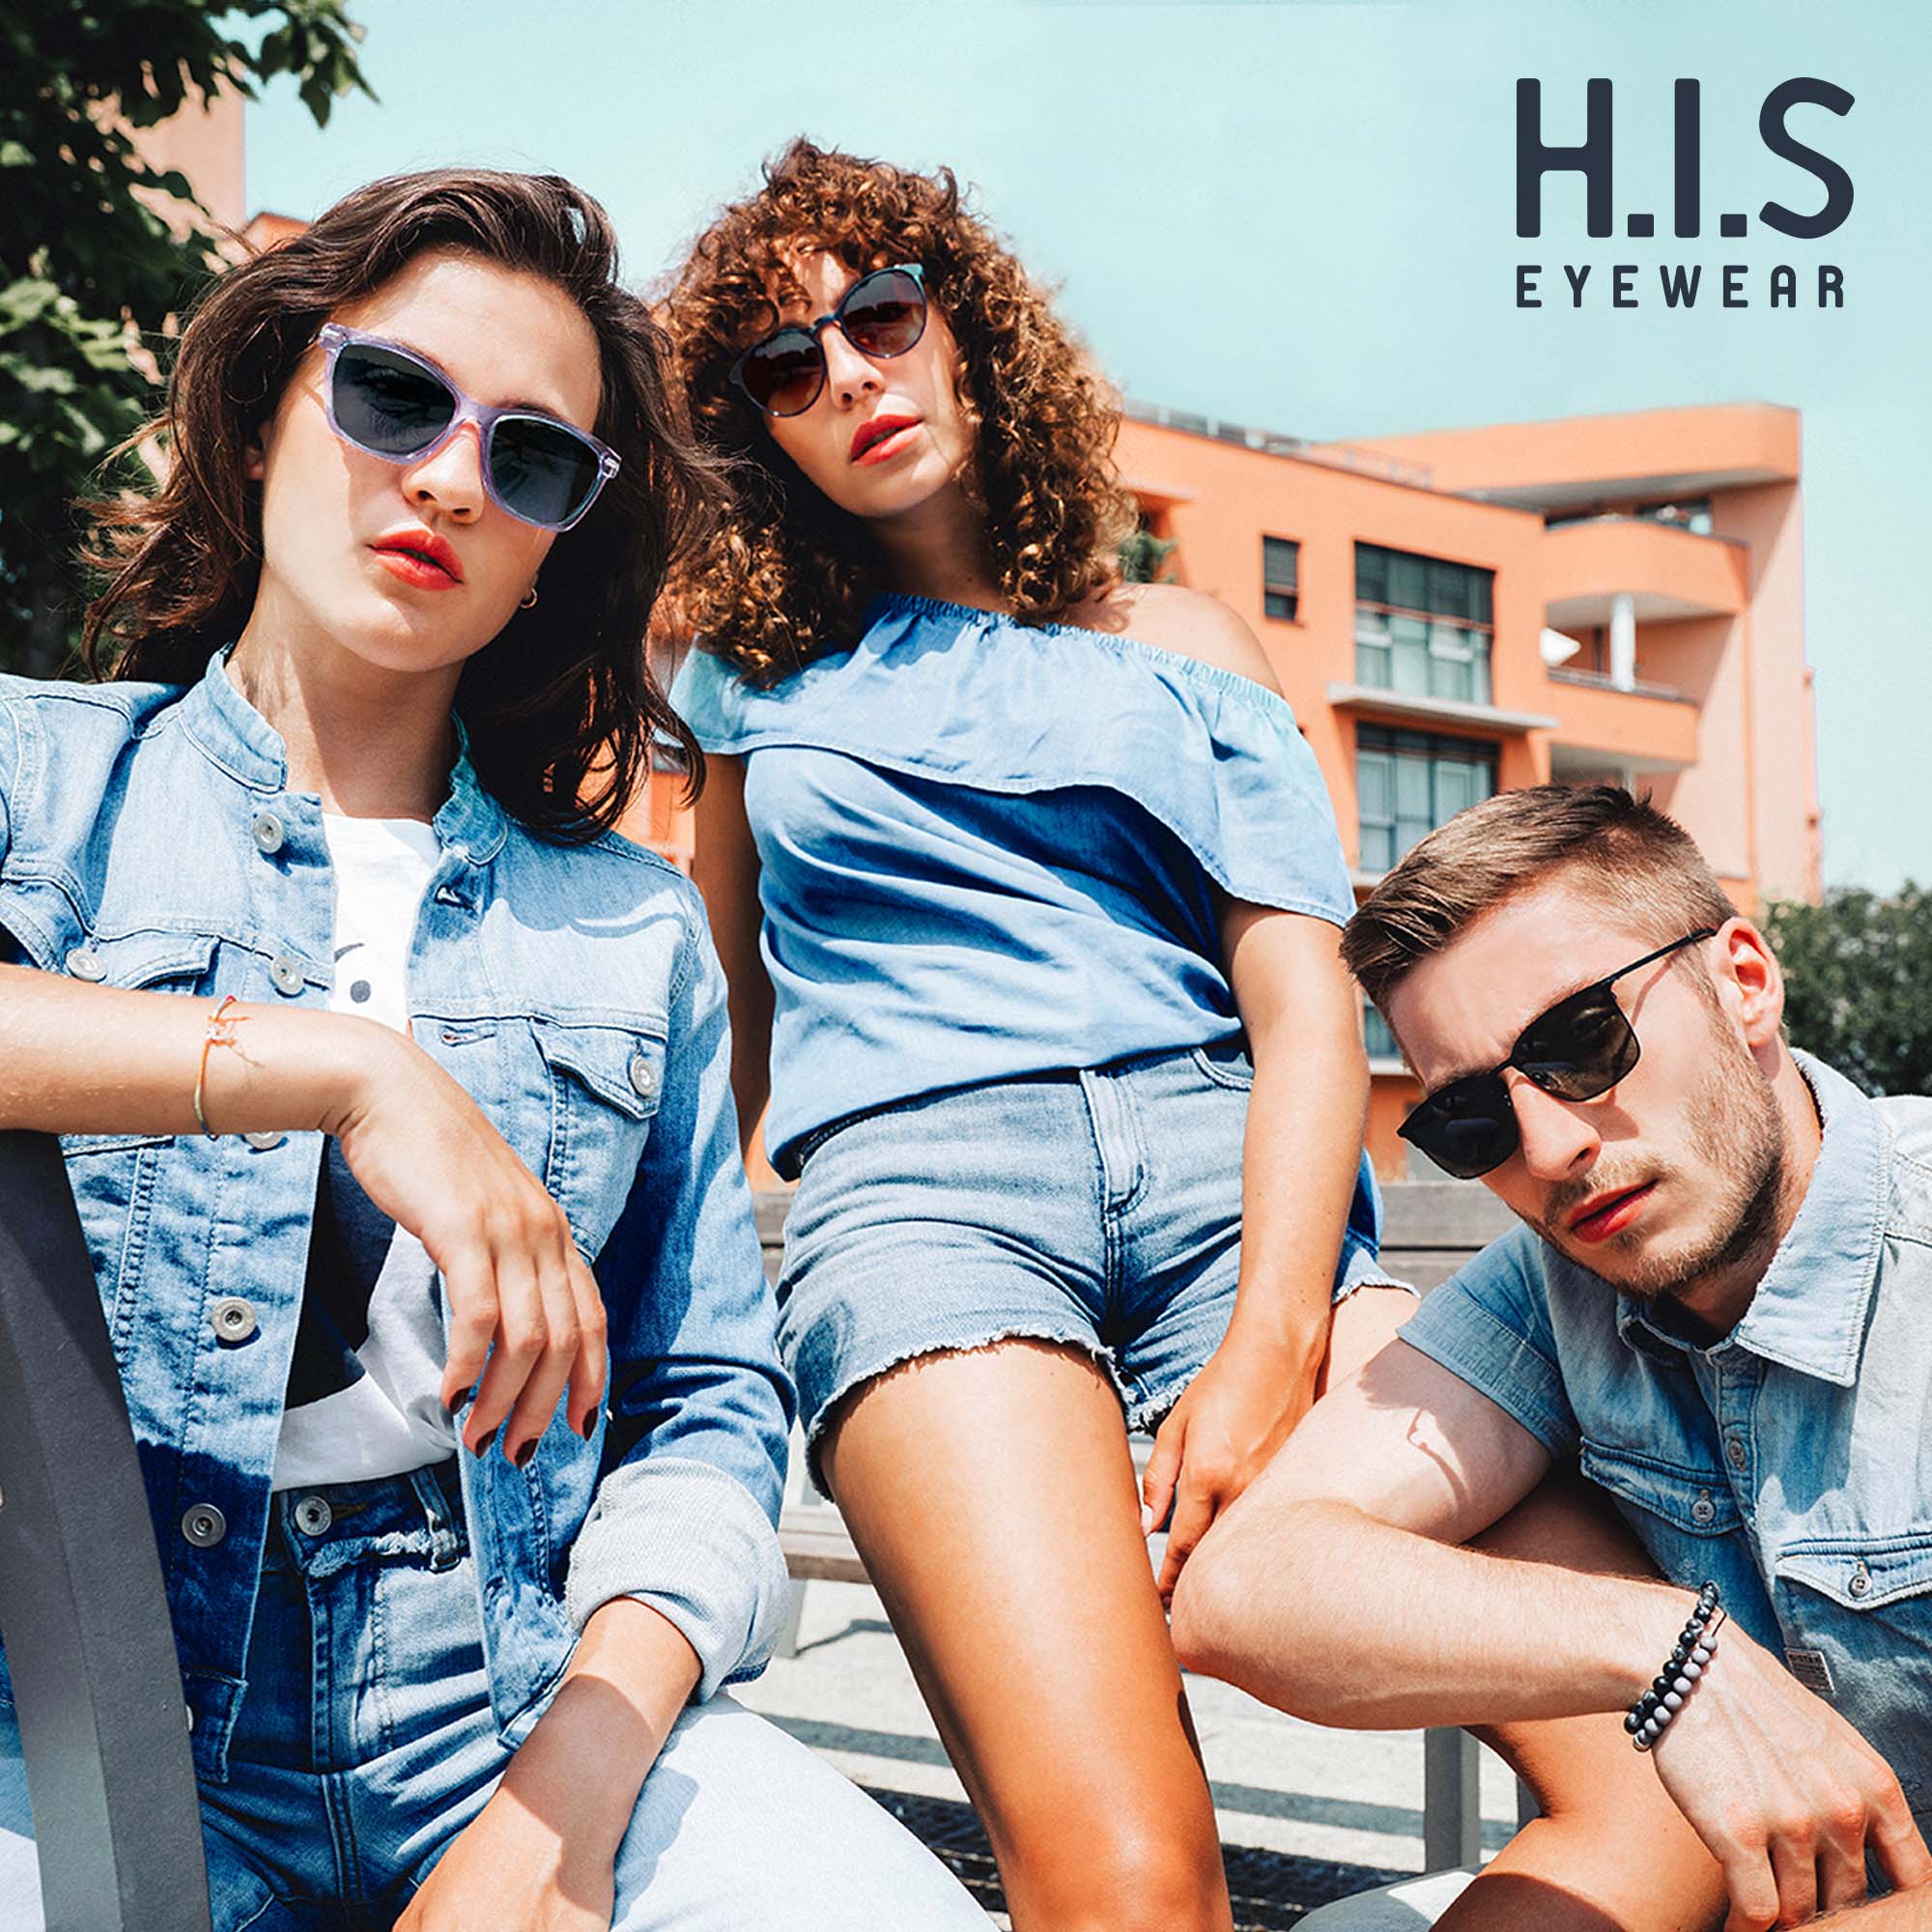 Zwei Frauen und ein Mann sitzen als Gruppe zusammen und tragen Sonnenbrillen von H.I.S Eyewear